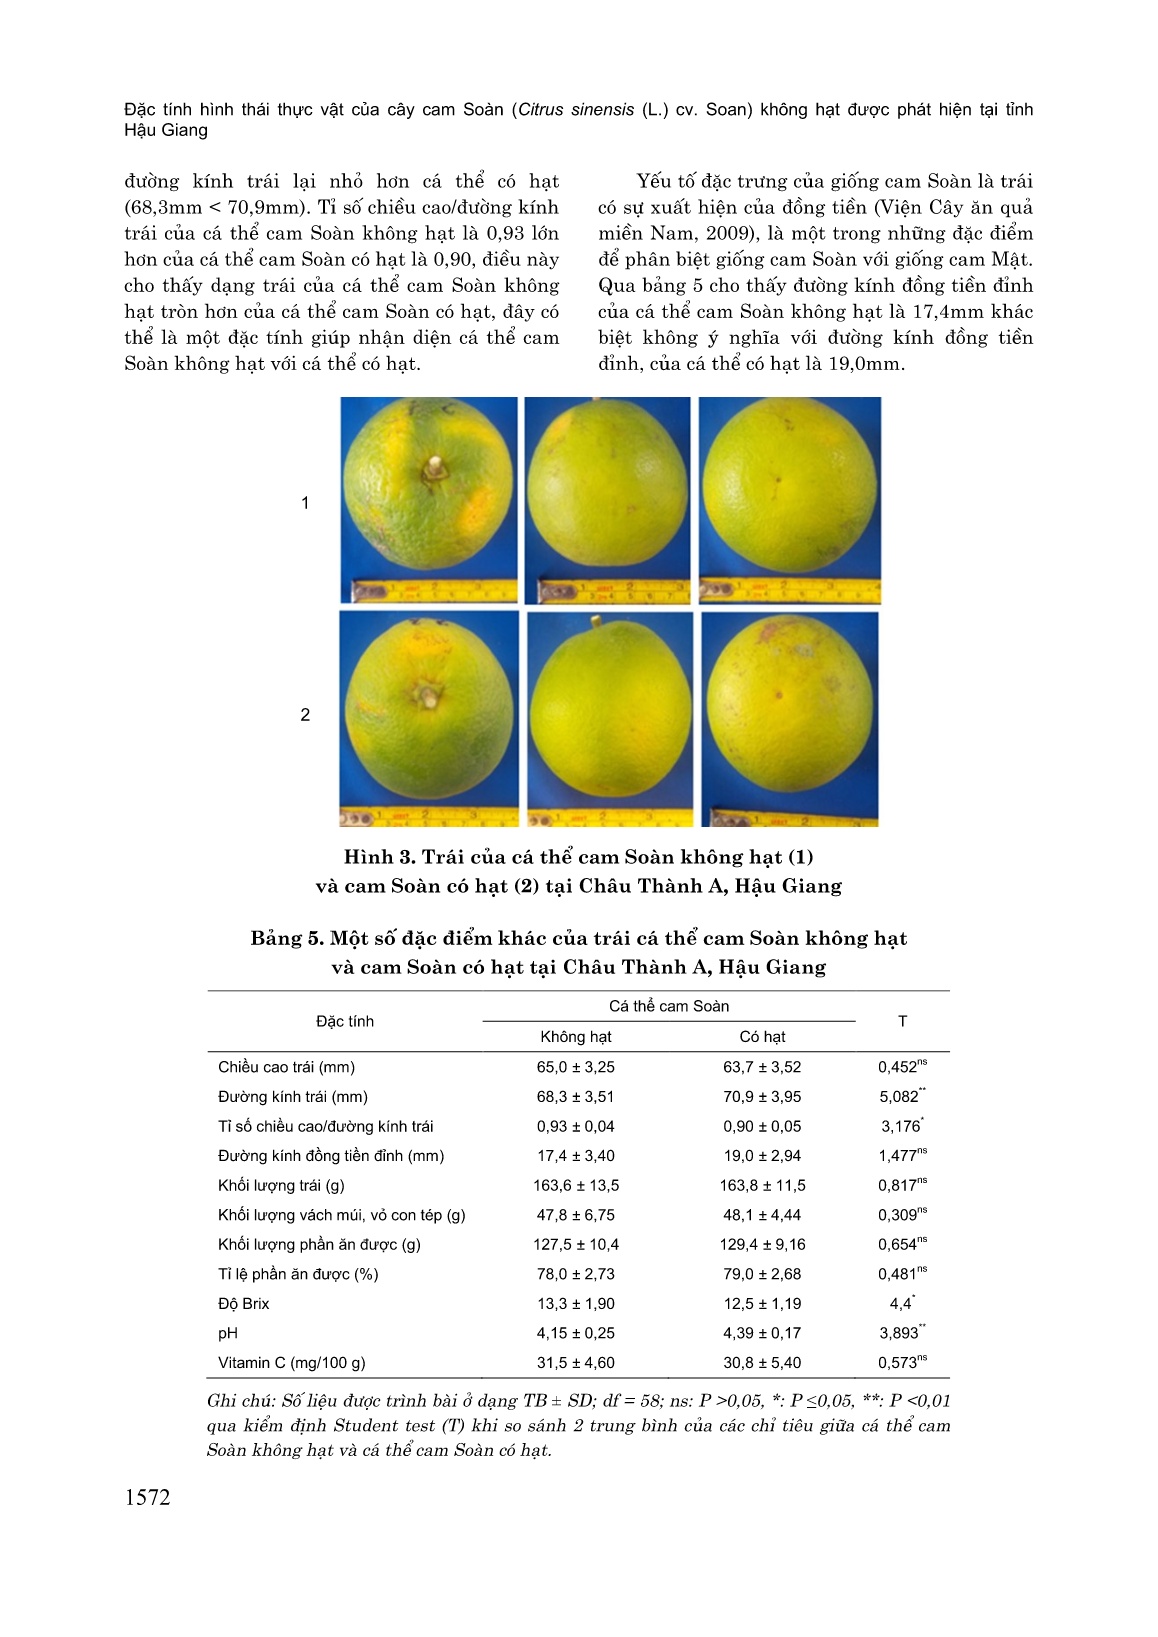 Đặc tính hình thái thực vật của cây cam soàn (Citrus Sinensis (L.) cv. Soan) không hạt được phát hiện tại tỉnh Hậu Giang trang 6